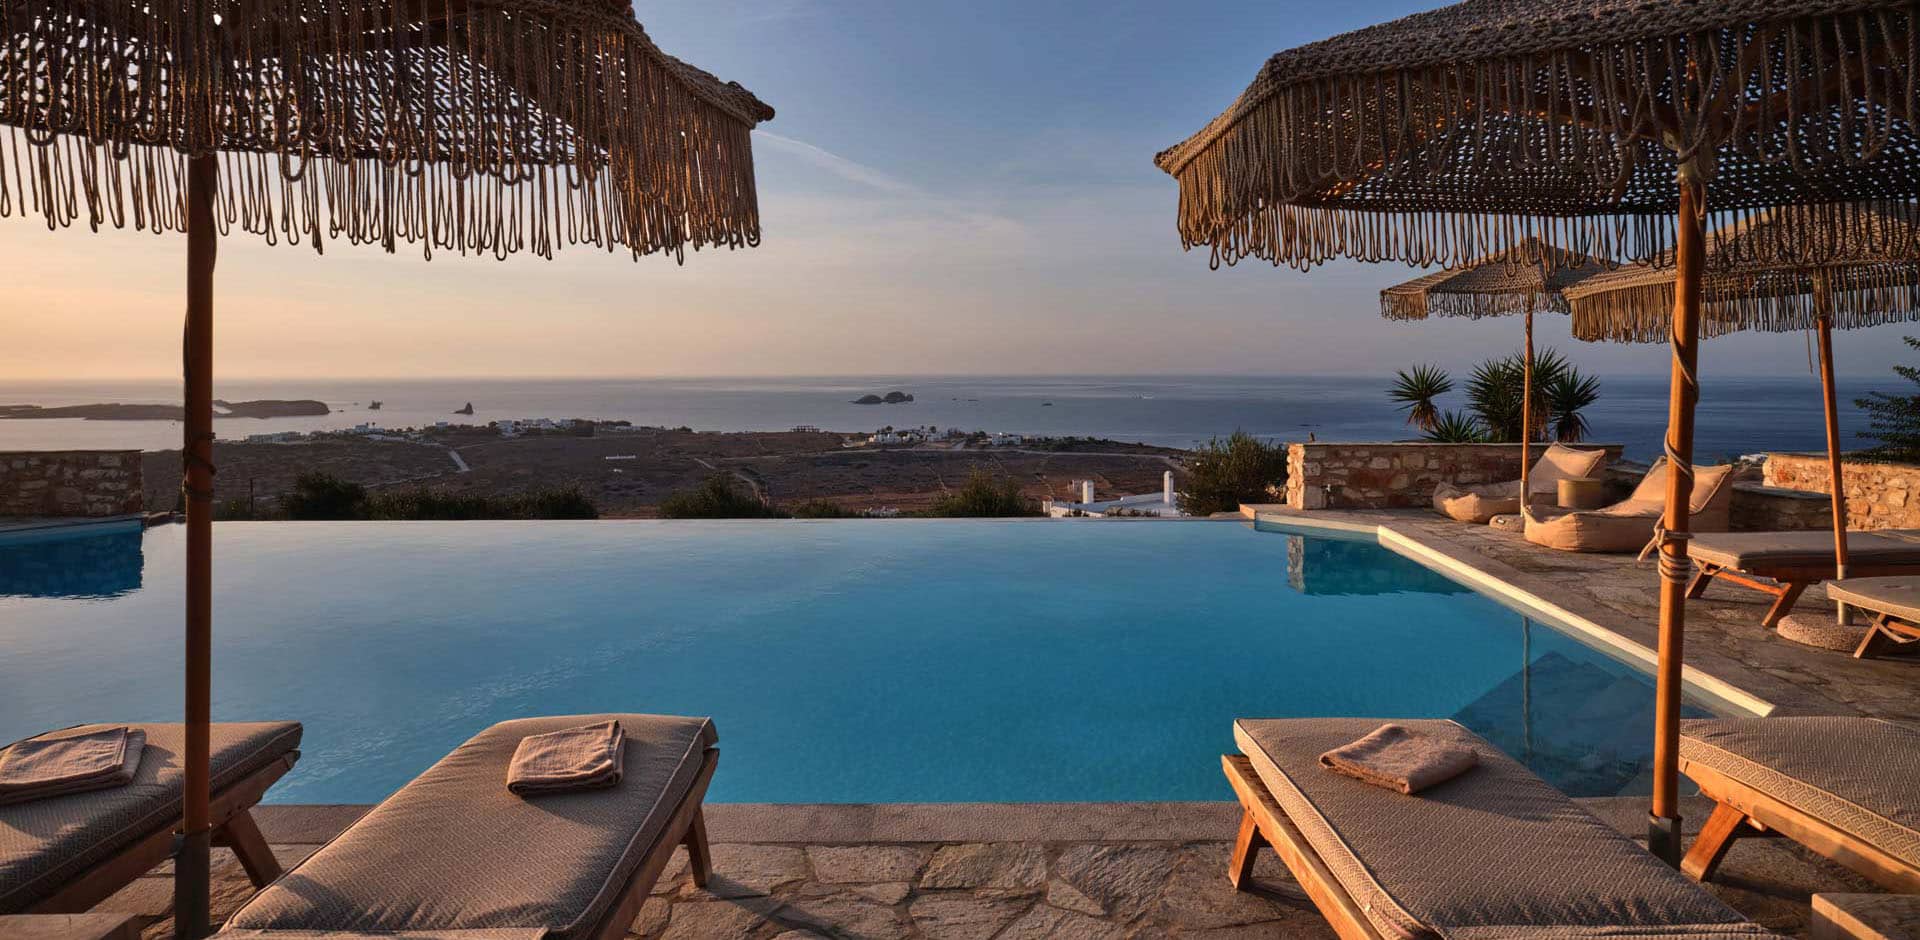 Luxury hotels Greece